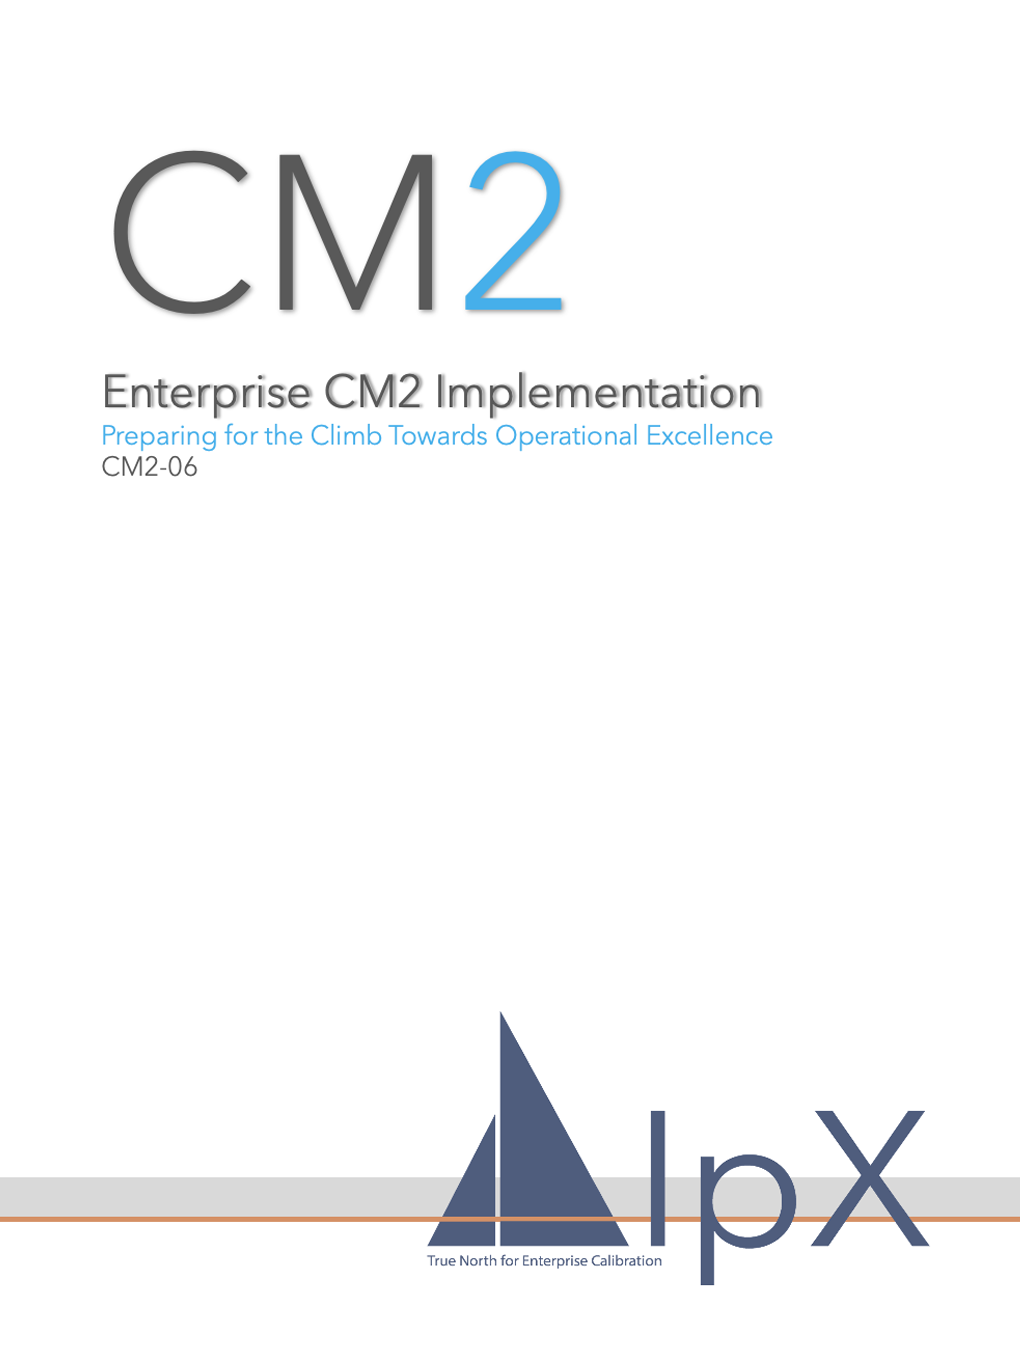 Enterprise CM2 Implementation Course